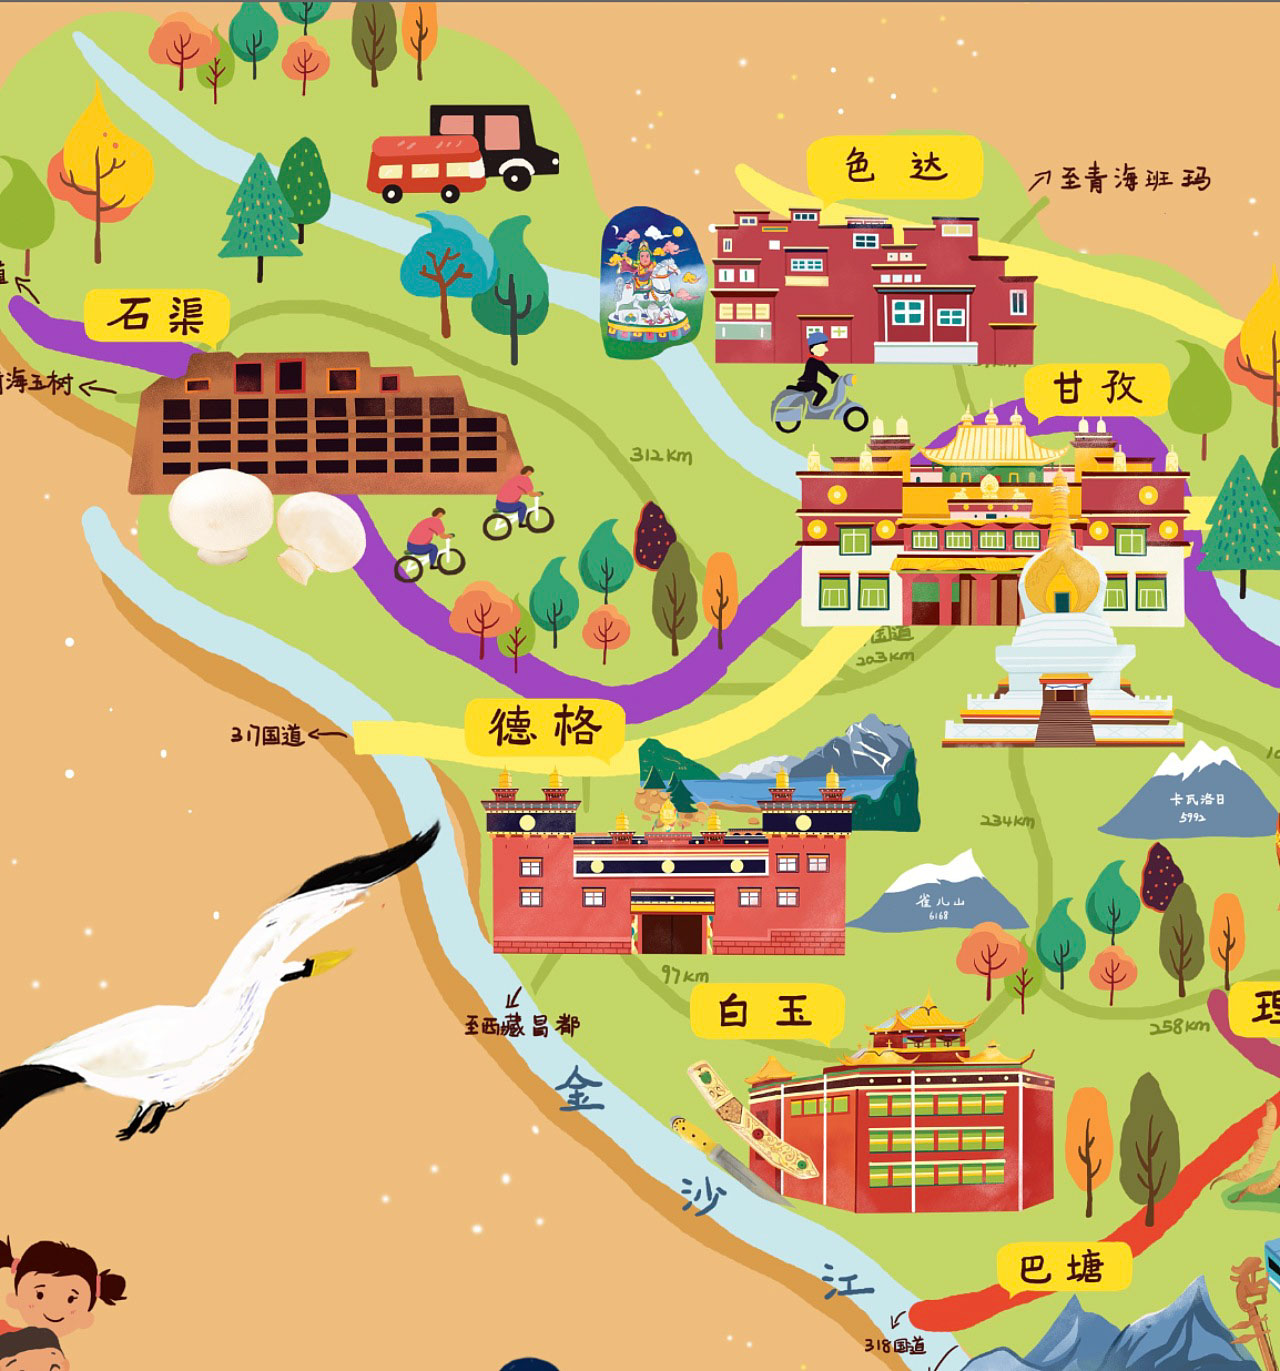 沙湖镇手绘地图景区的文化宝库